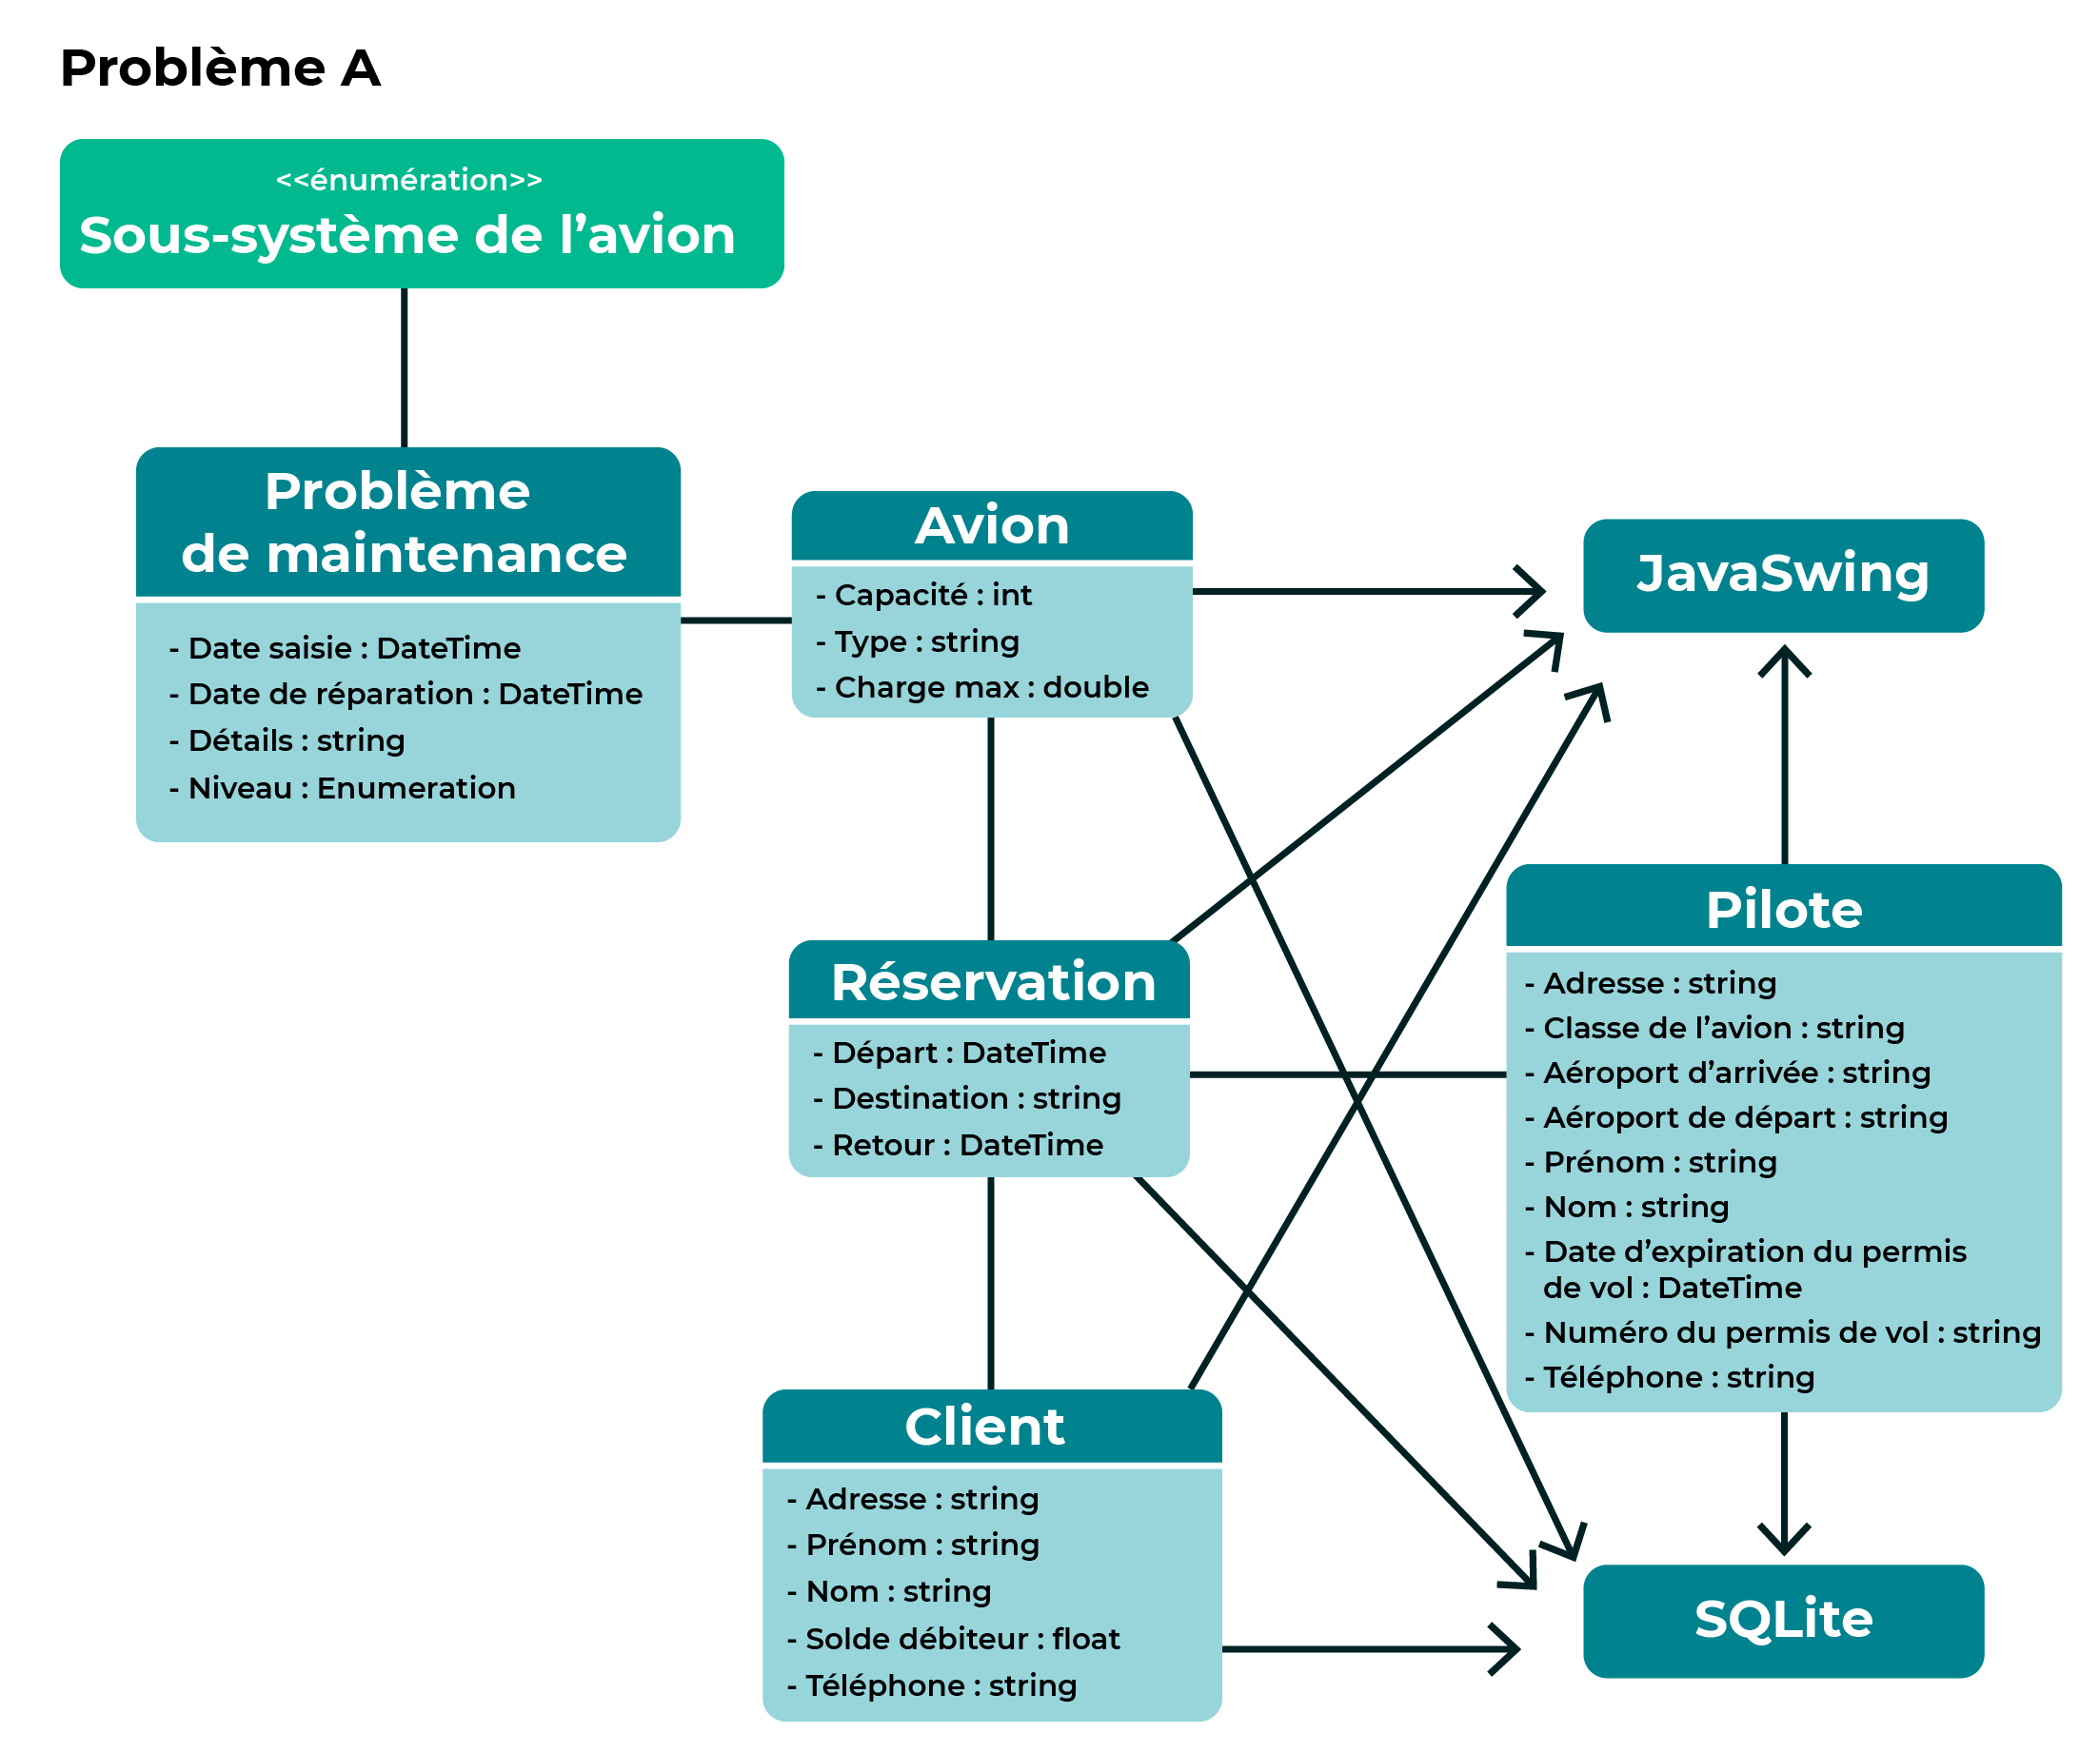 Le diagramme présenté reprend l'architecture initiale contenant les classes JavaSwing de base (avion, réservation, client et pilote) reliées à la base de données SQLite mais il y a en plus une nouvelle classe qui dédié au problème de maintenance.